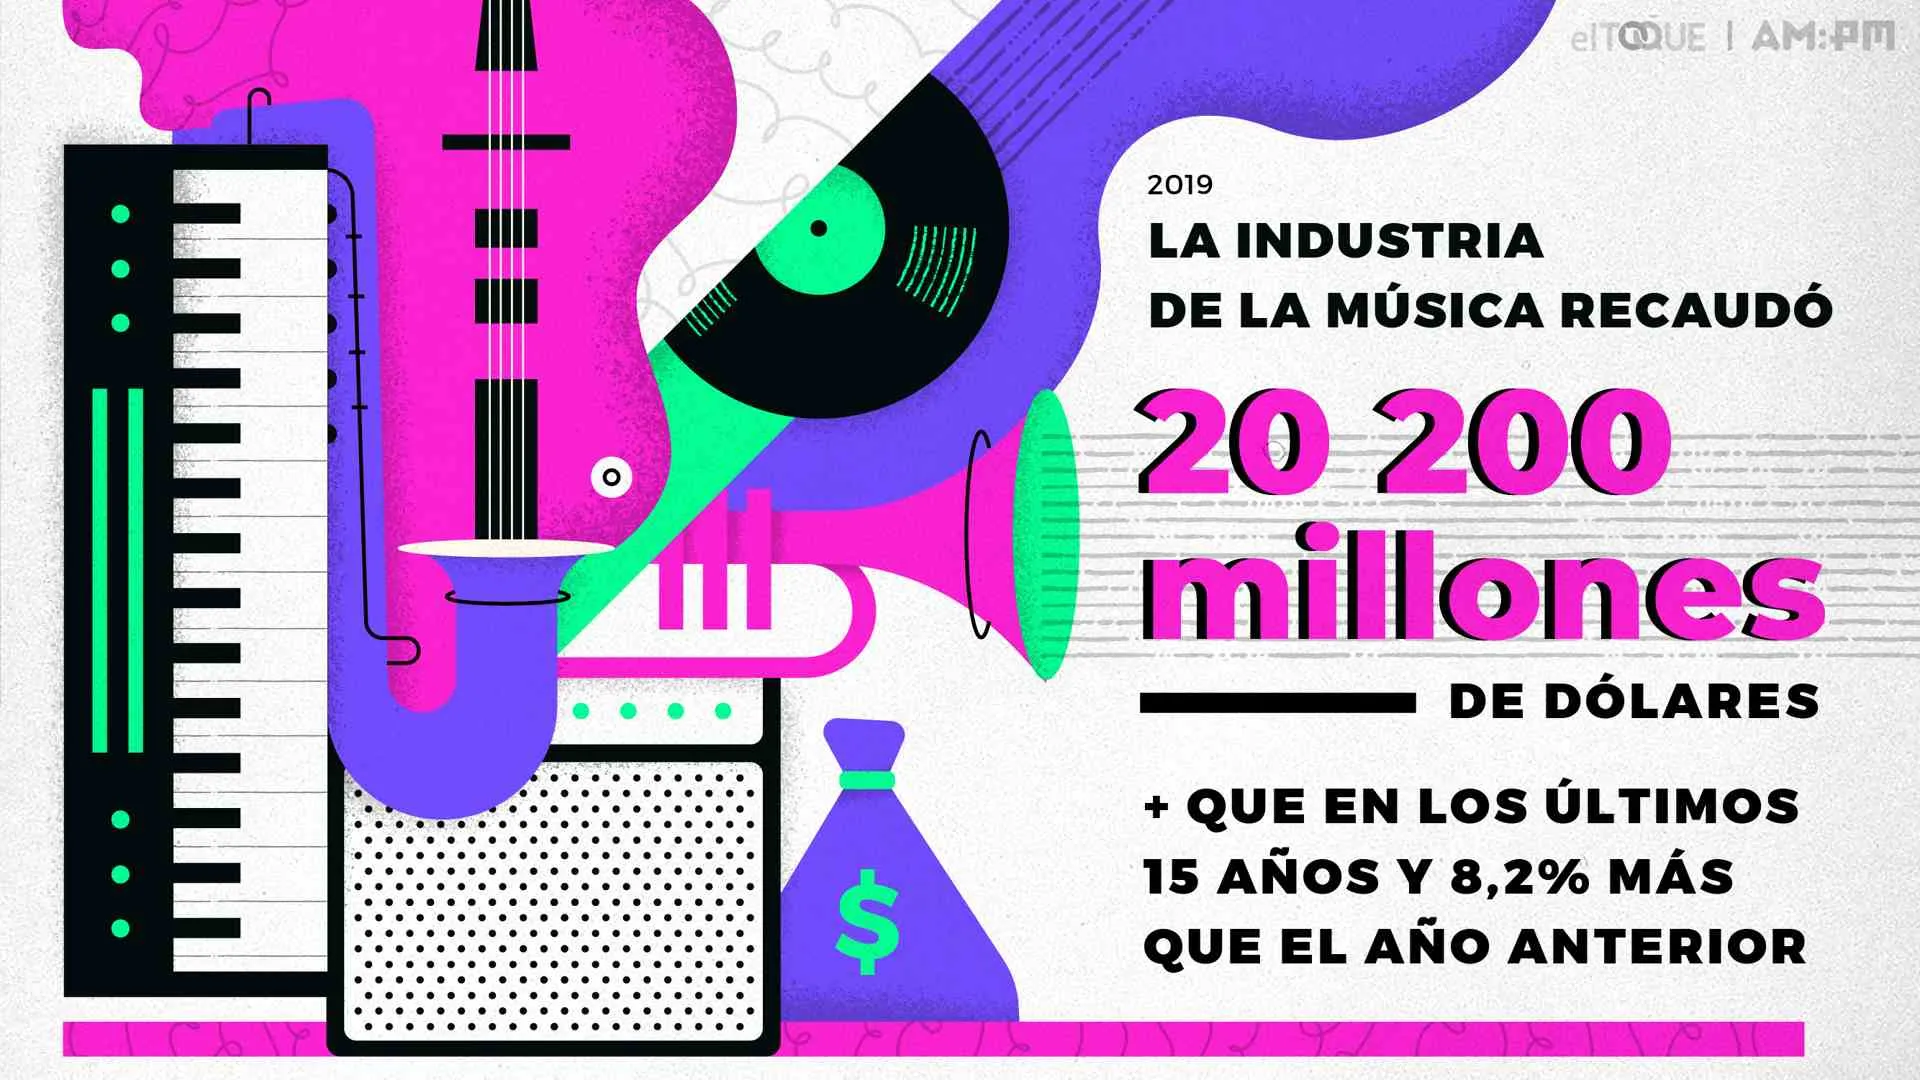 Consumo y mercado de la música en 2019 (en cifras). Ilustración: Janet Aguilar / Magazine AM:PM / El Toque.